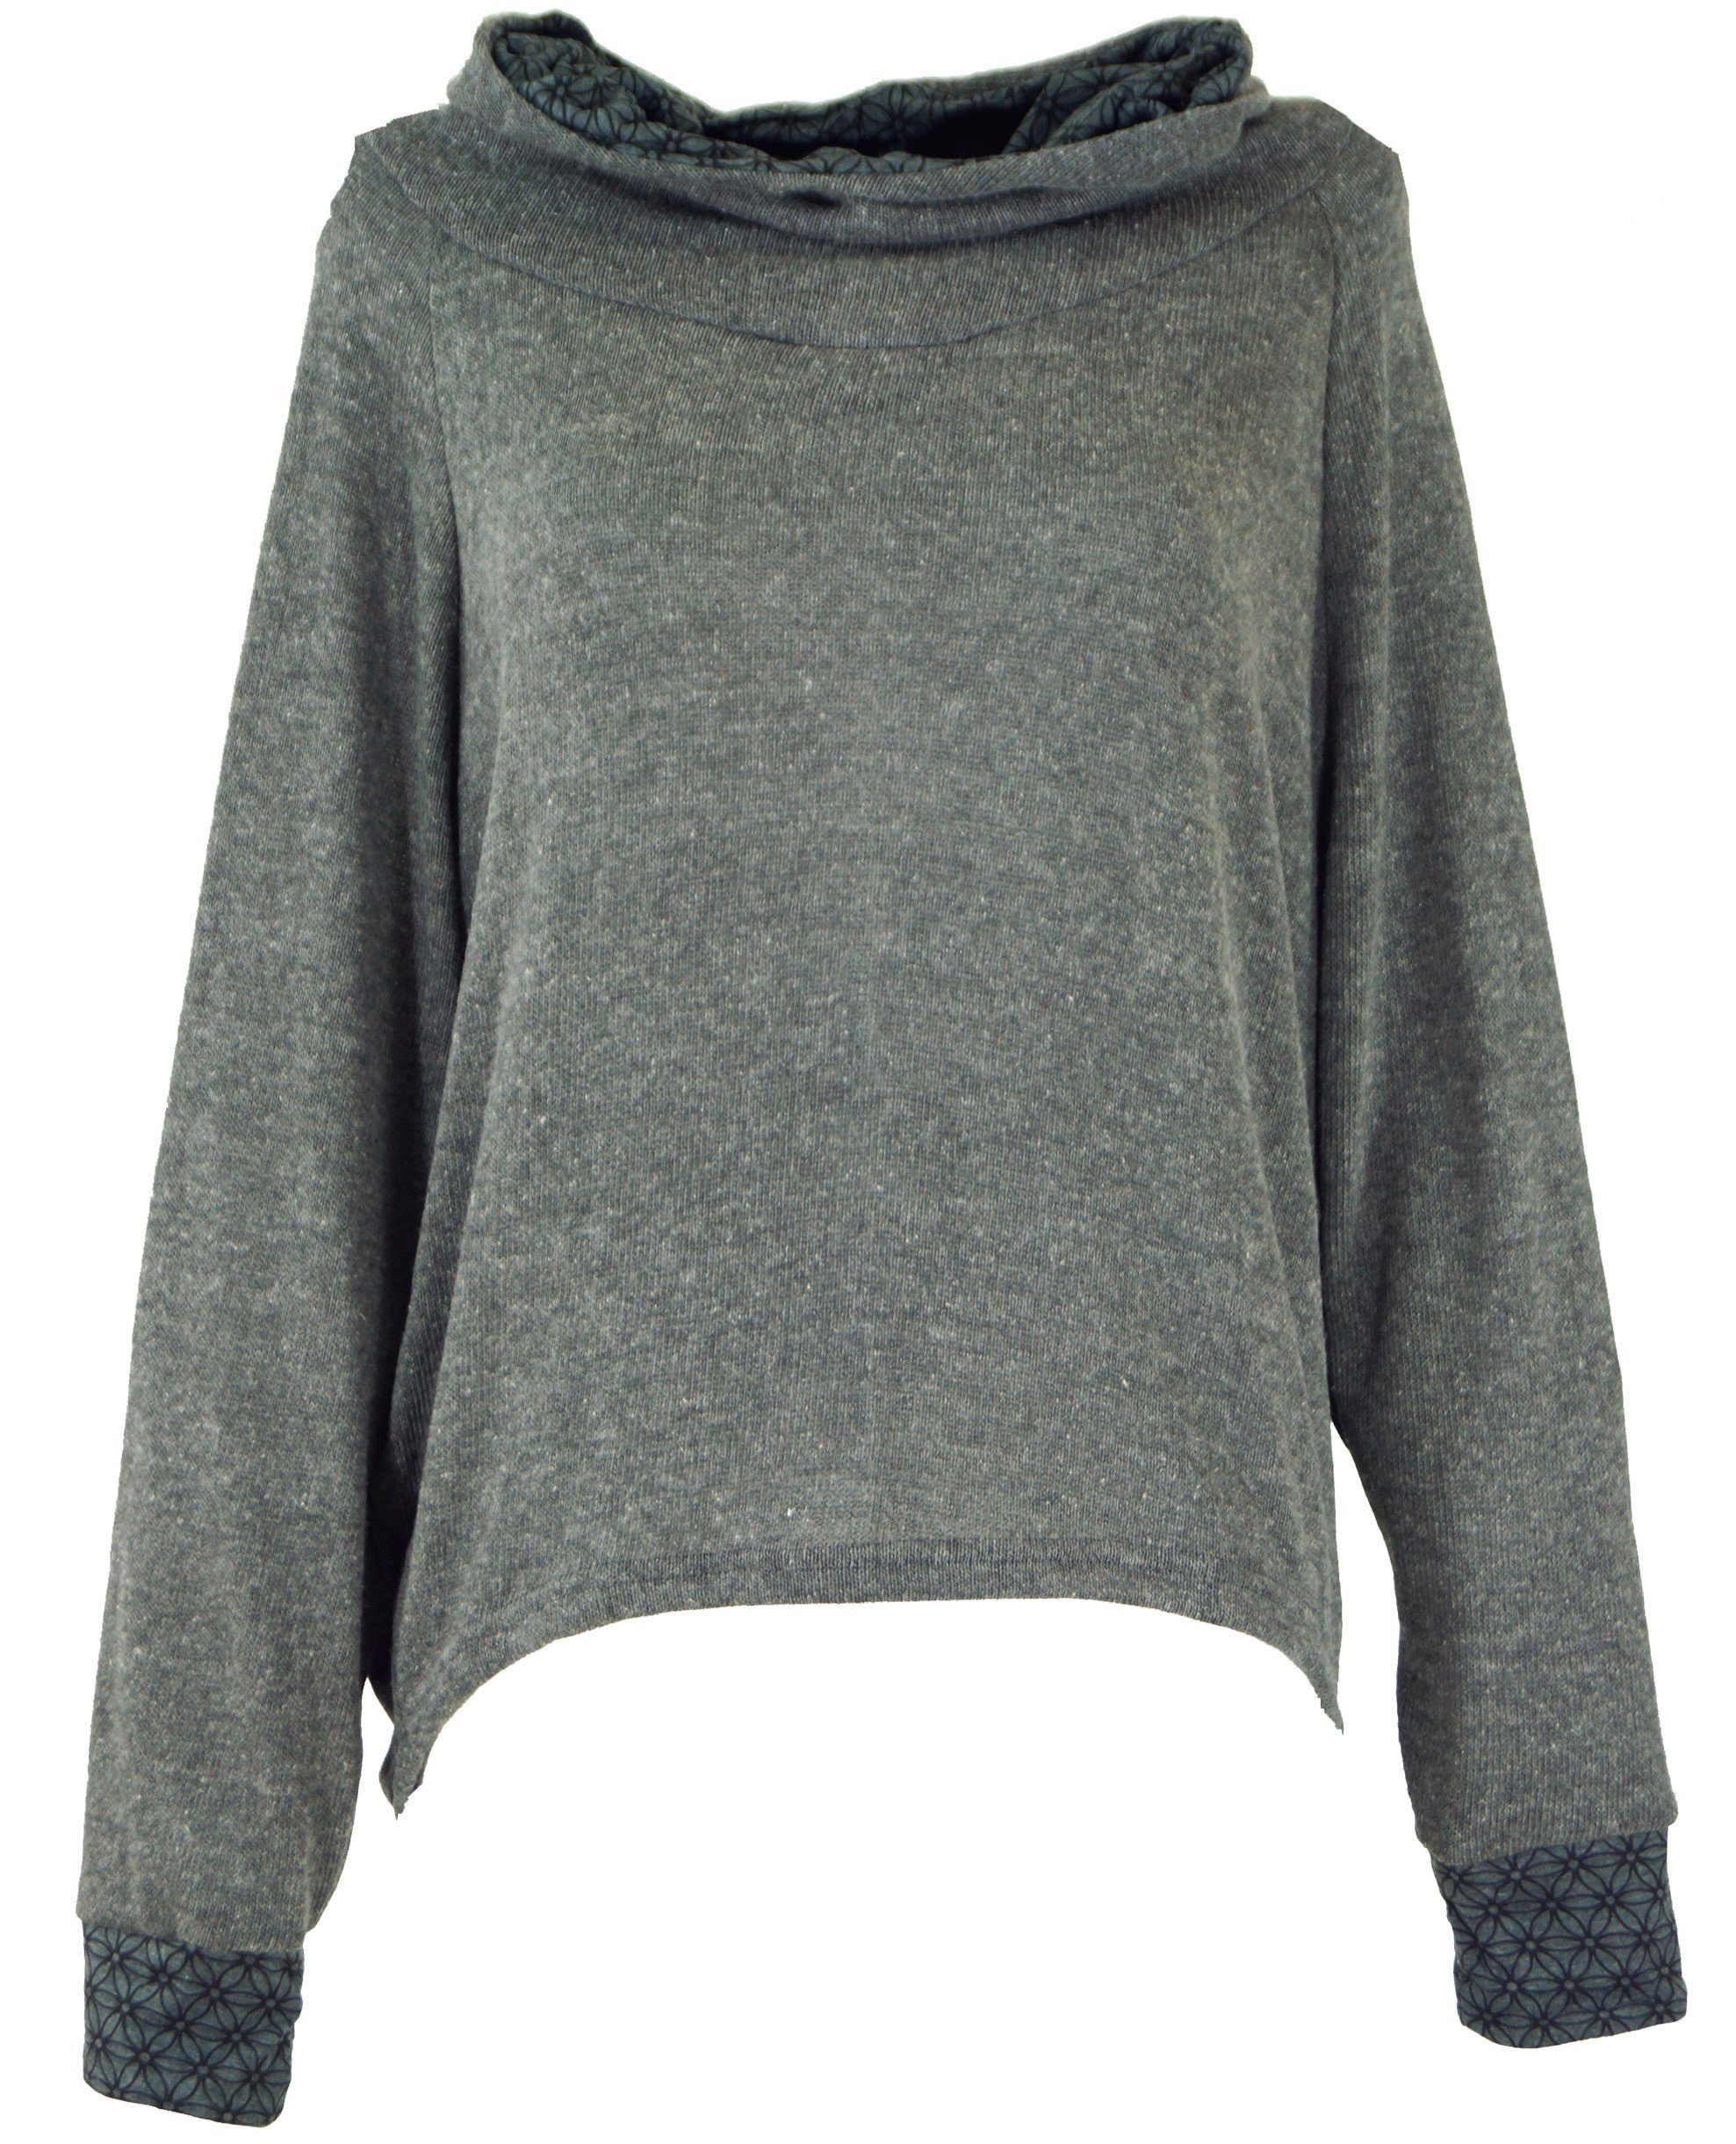 Guru-Shop Longsleeve Hoody, alternative Pullover, Sweatshirt, Kapuzenpullover -.. grau Bekleidung